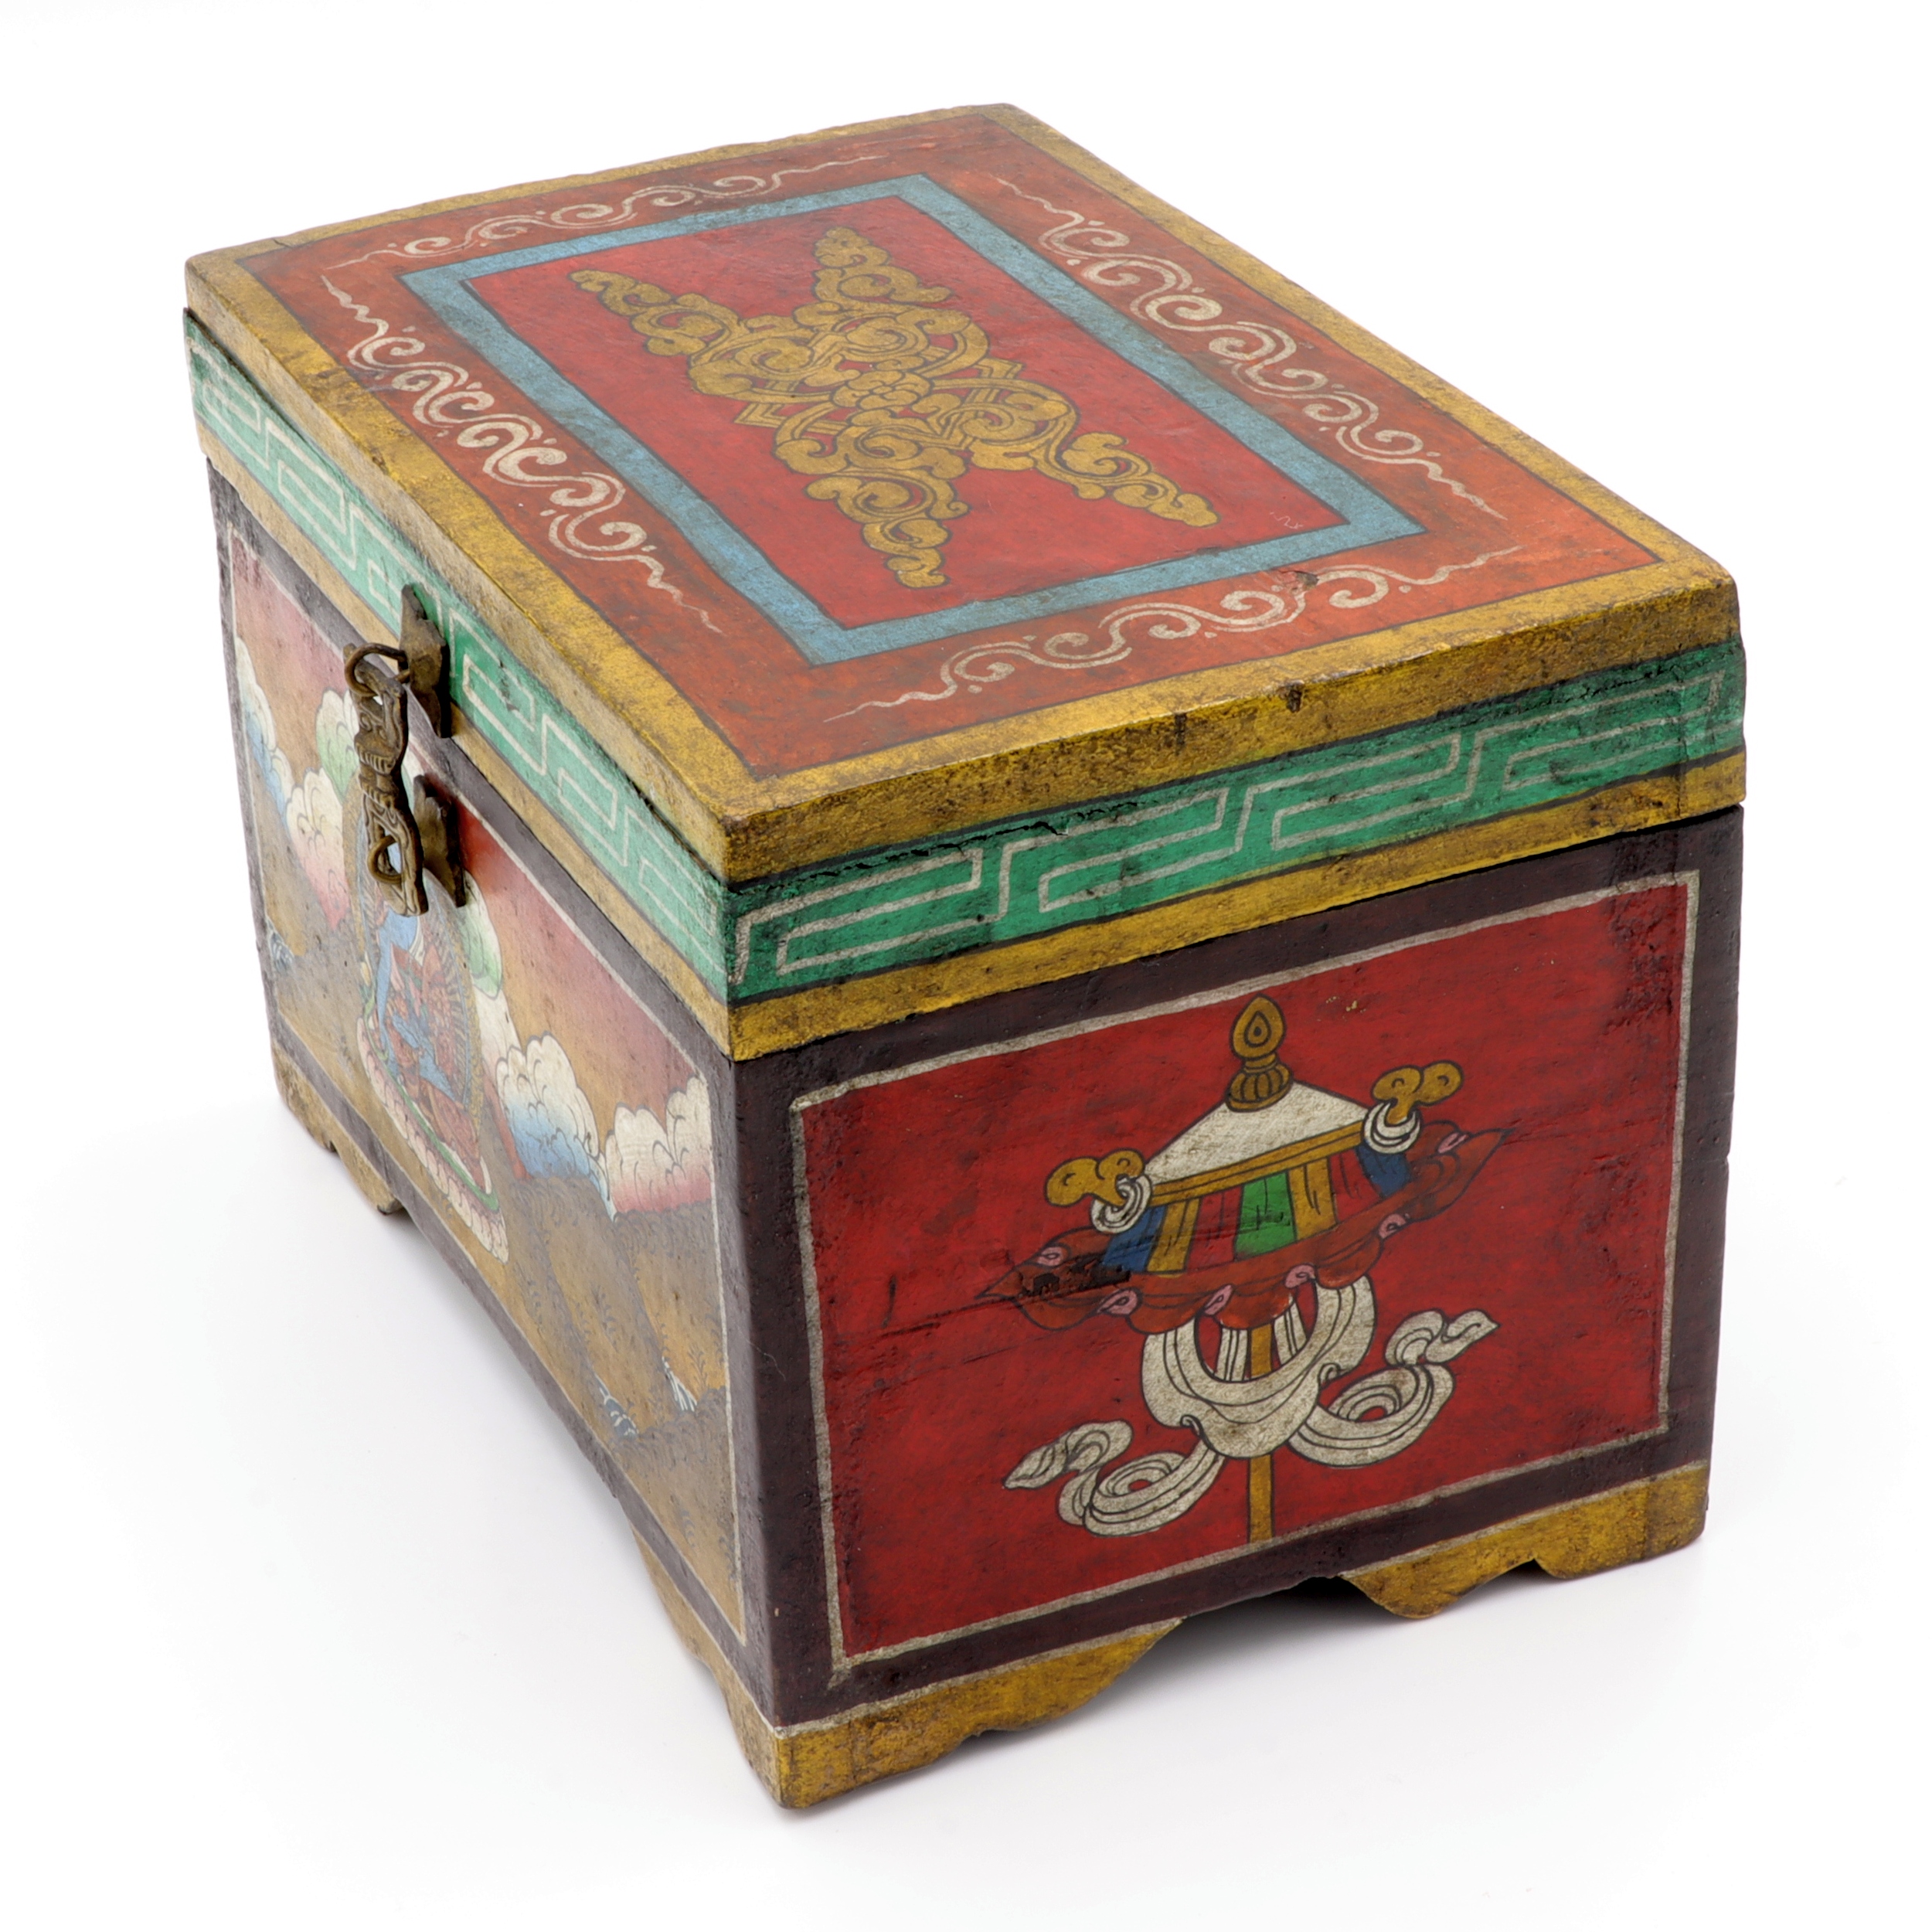 Handbemalte Kiste aus Holz - Buddha, Ashtamangala - Truhen Design - typisch nepalesiche Farben - fair gehandelt aus Nepal